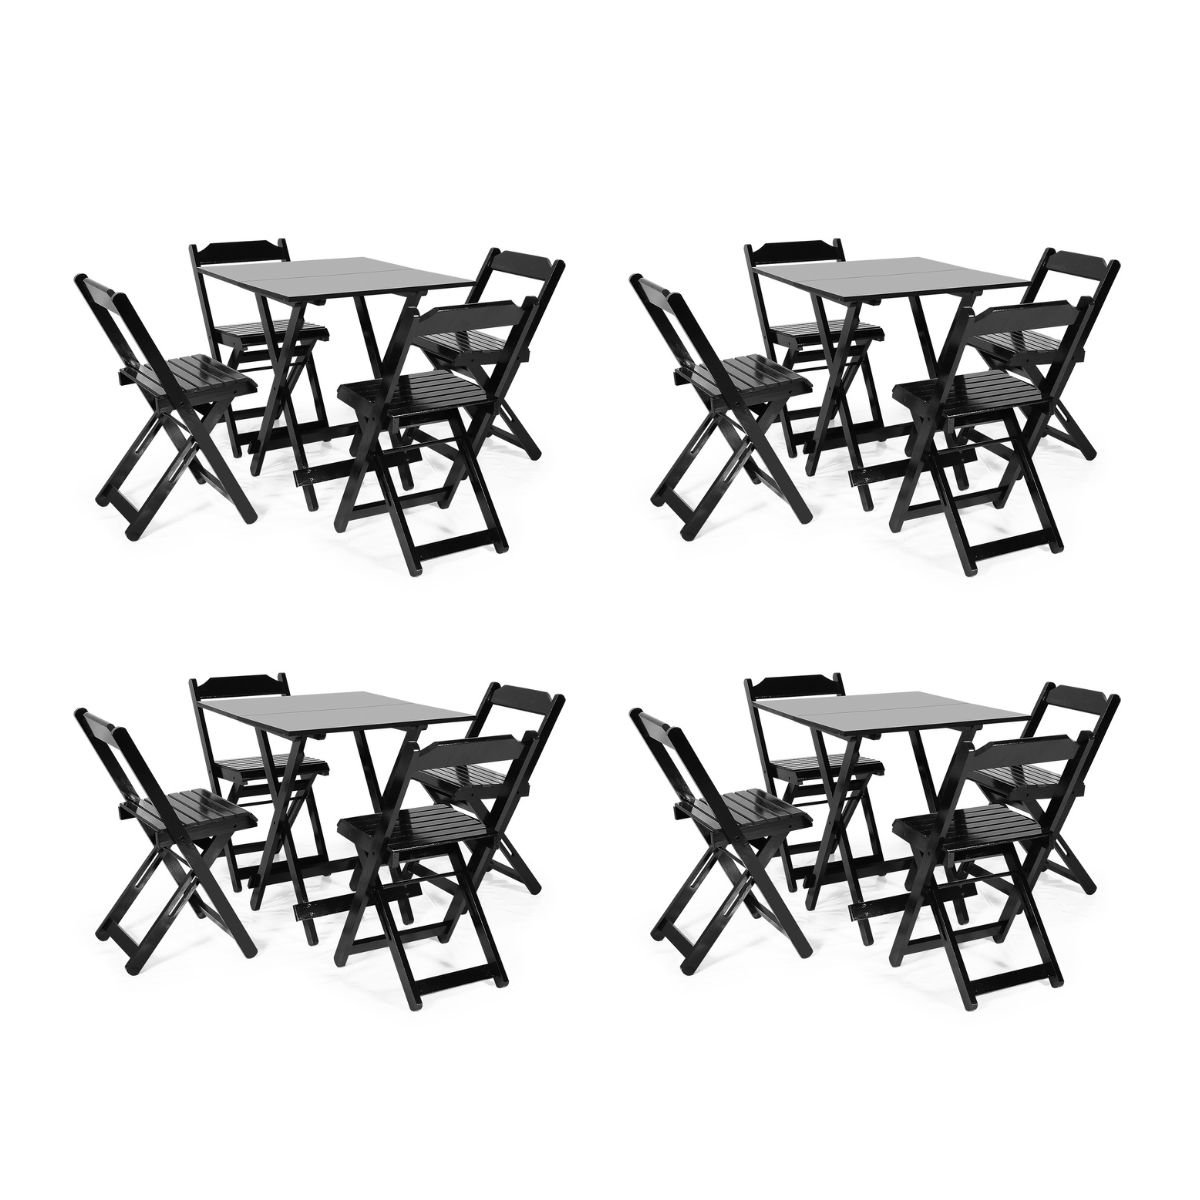 Kit 4 Conjuntos Dobráveis 70 X 70 com 4 Cadeiras Dobráveis Preto - Mòveis Britz